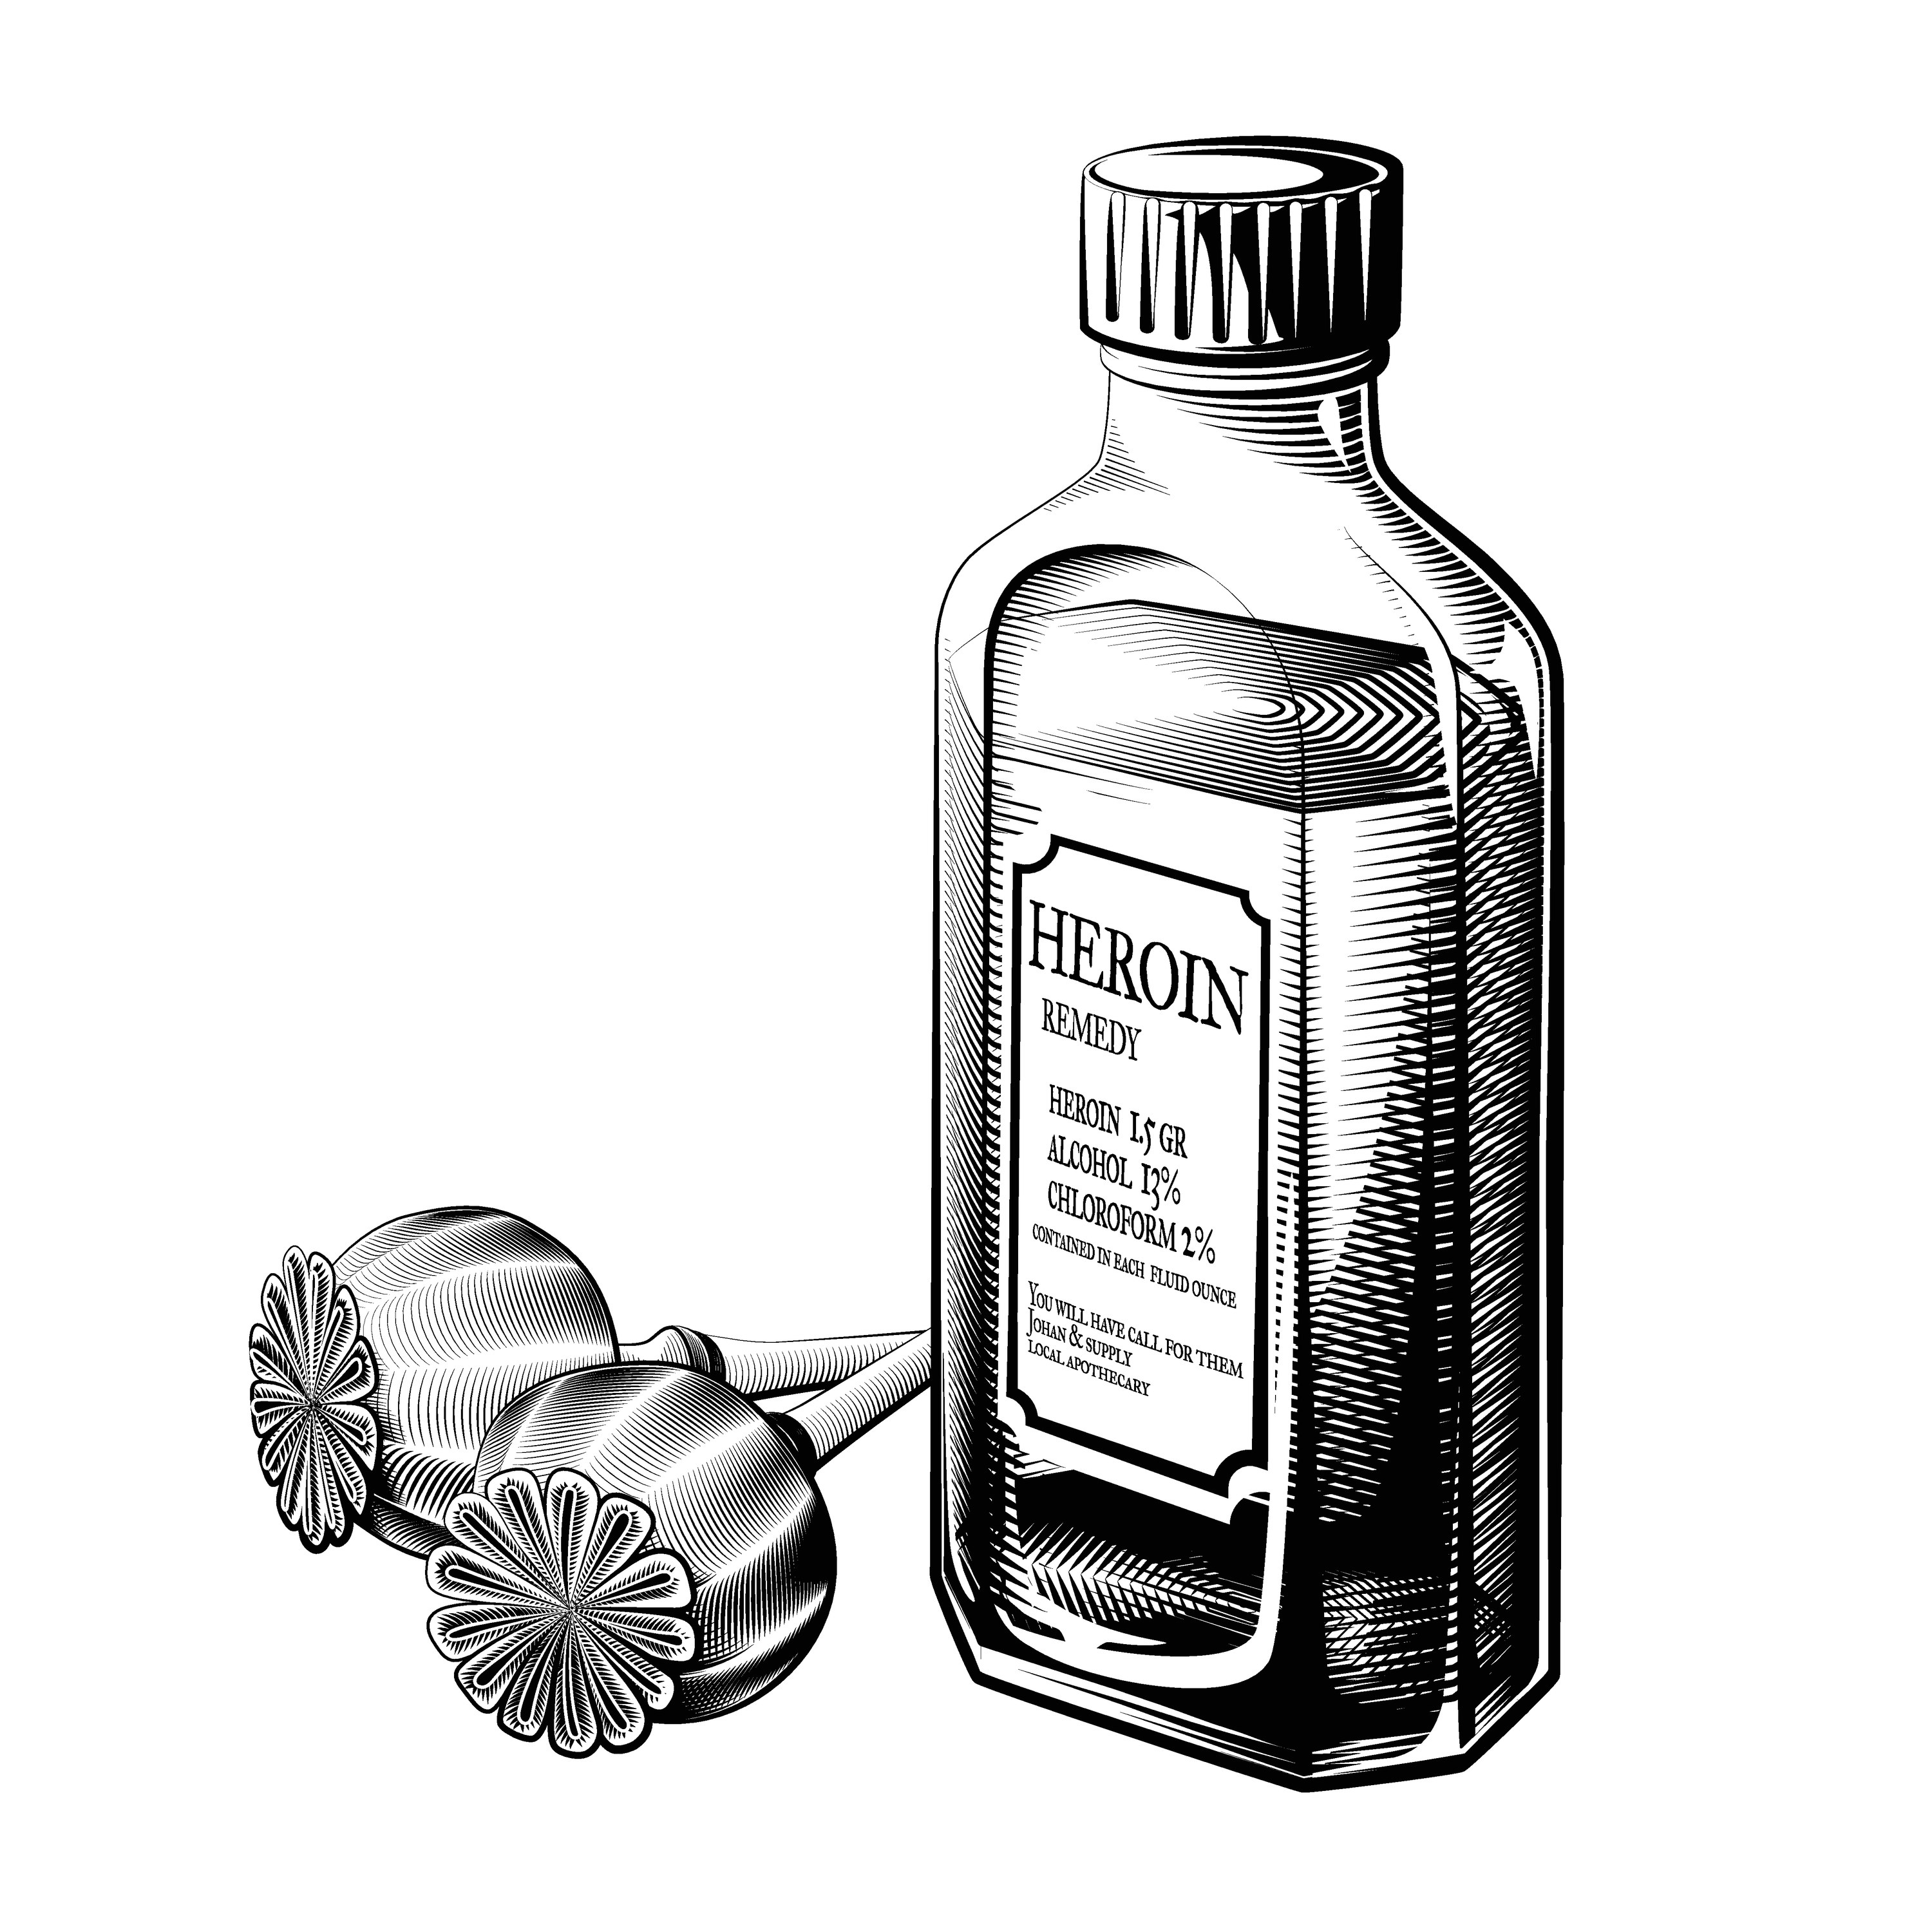 Vintage heroin drug bottle and opium poppies vector. Ink illustration of a liquid drug